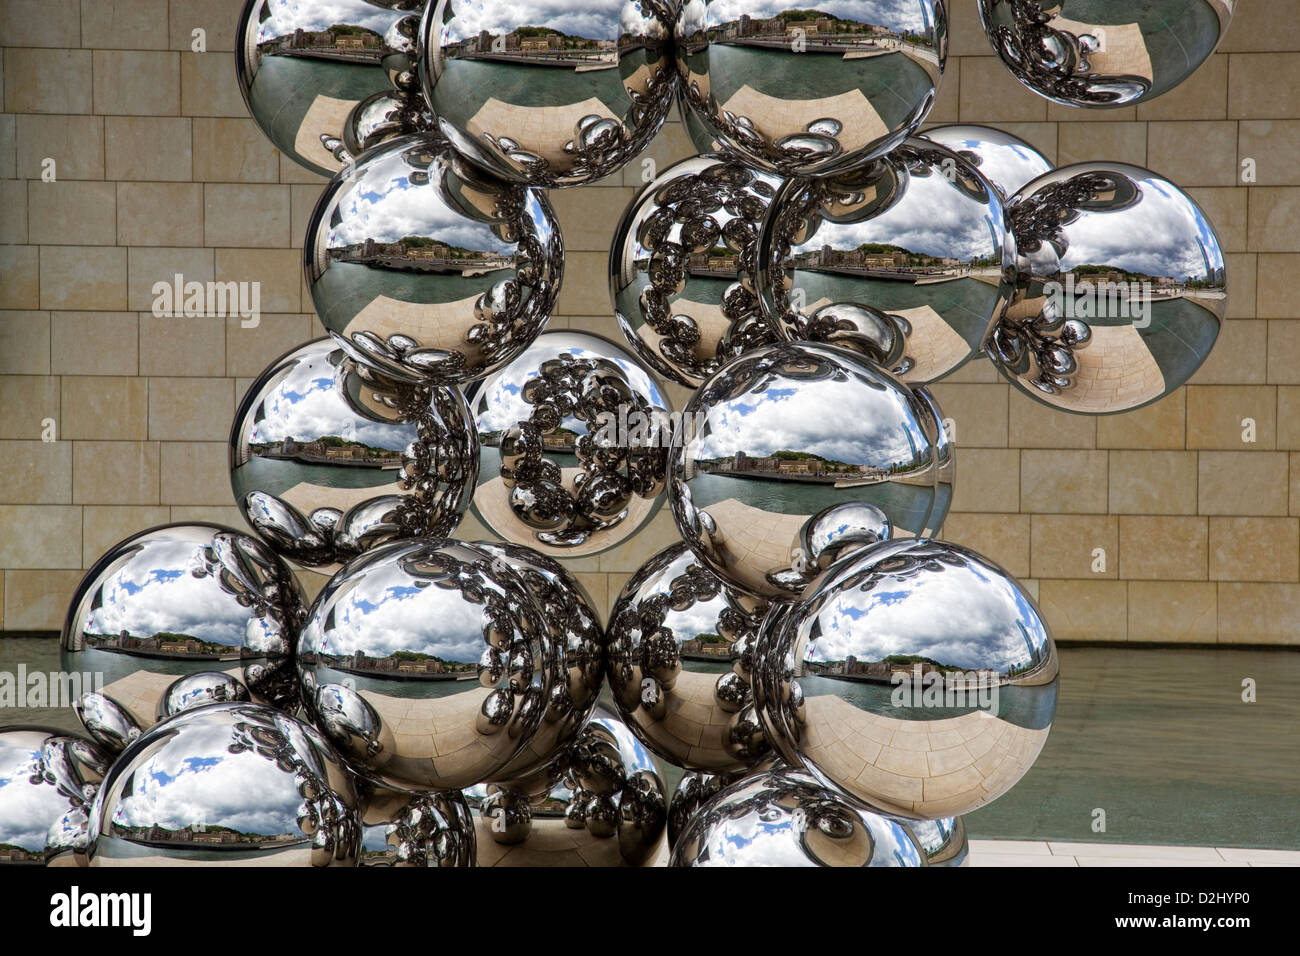 La riflessione del paesaggio urbano di Bilbao su diverse sfere in acciaio inox Foto Stock